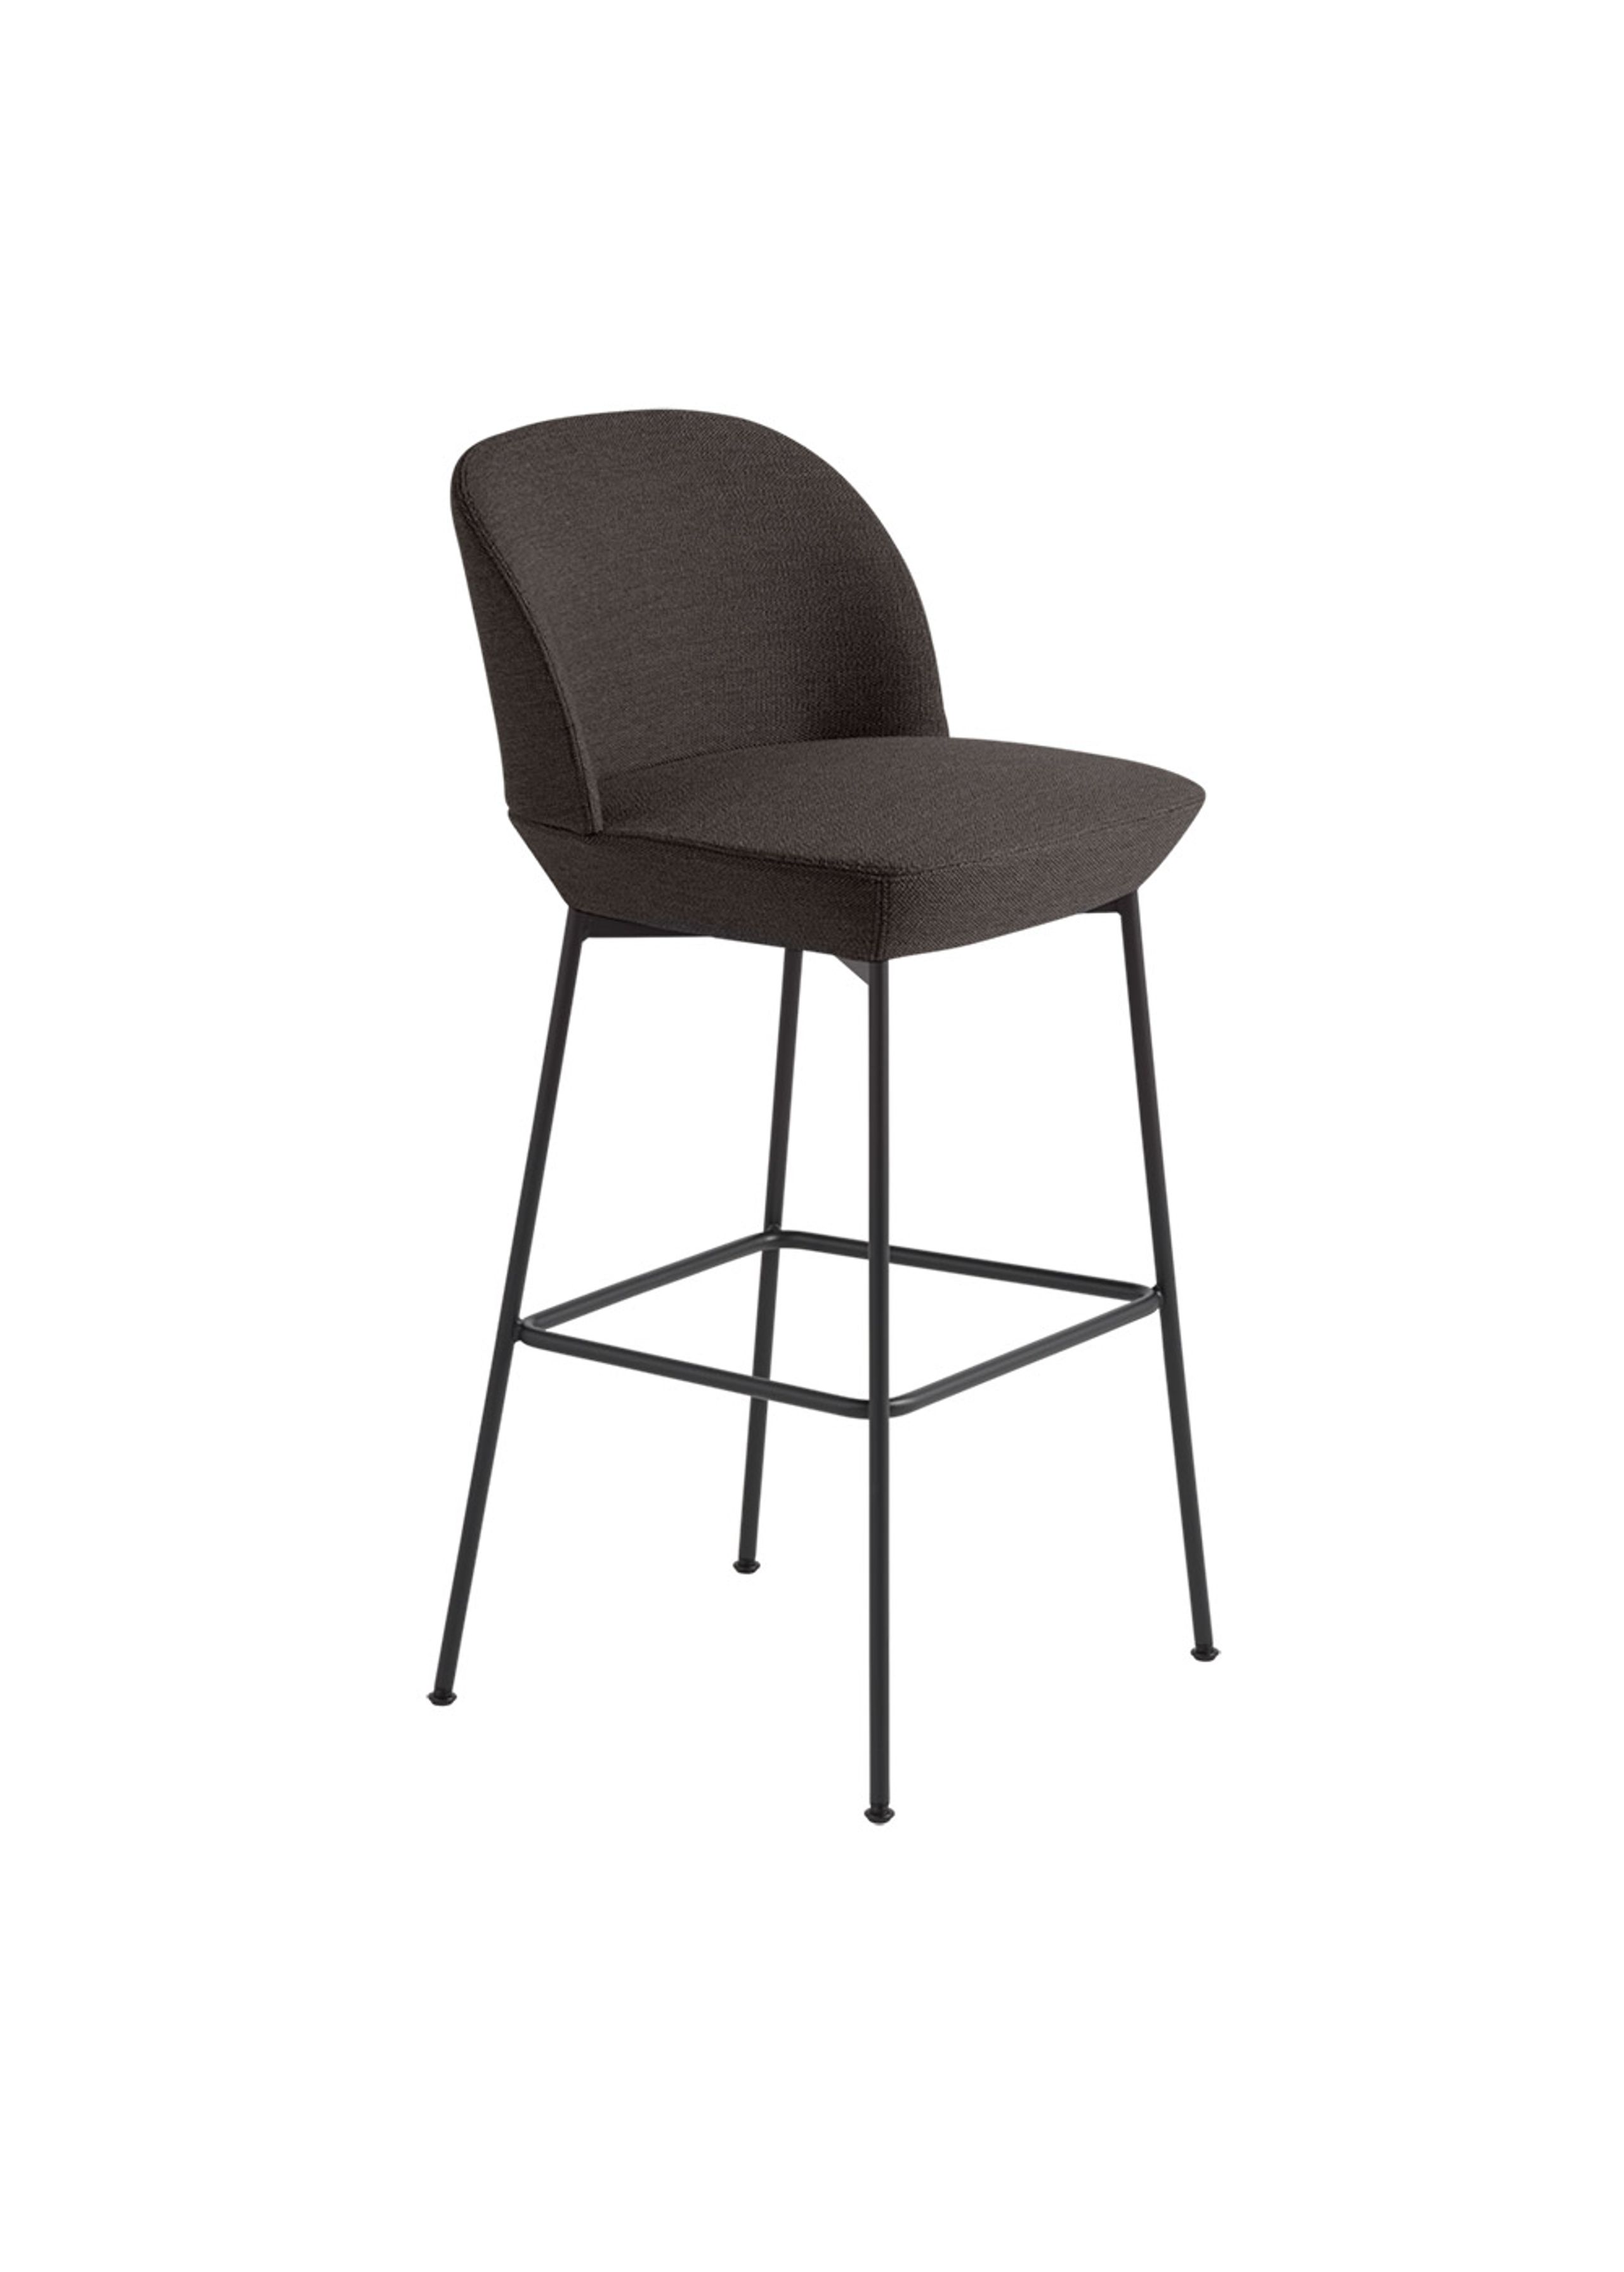 Muuto - Banco de bar - Oslo Bar Chair - Ocean 50 / Anthracite Black